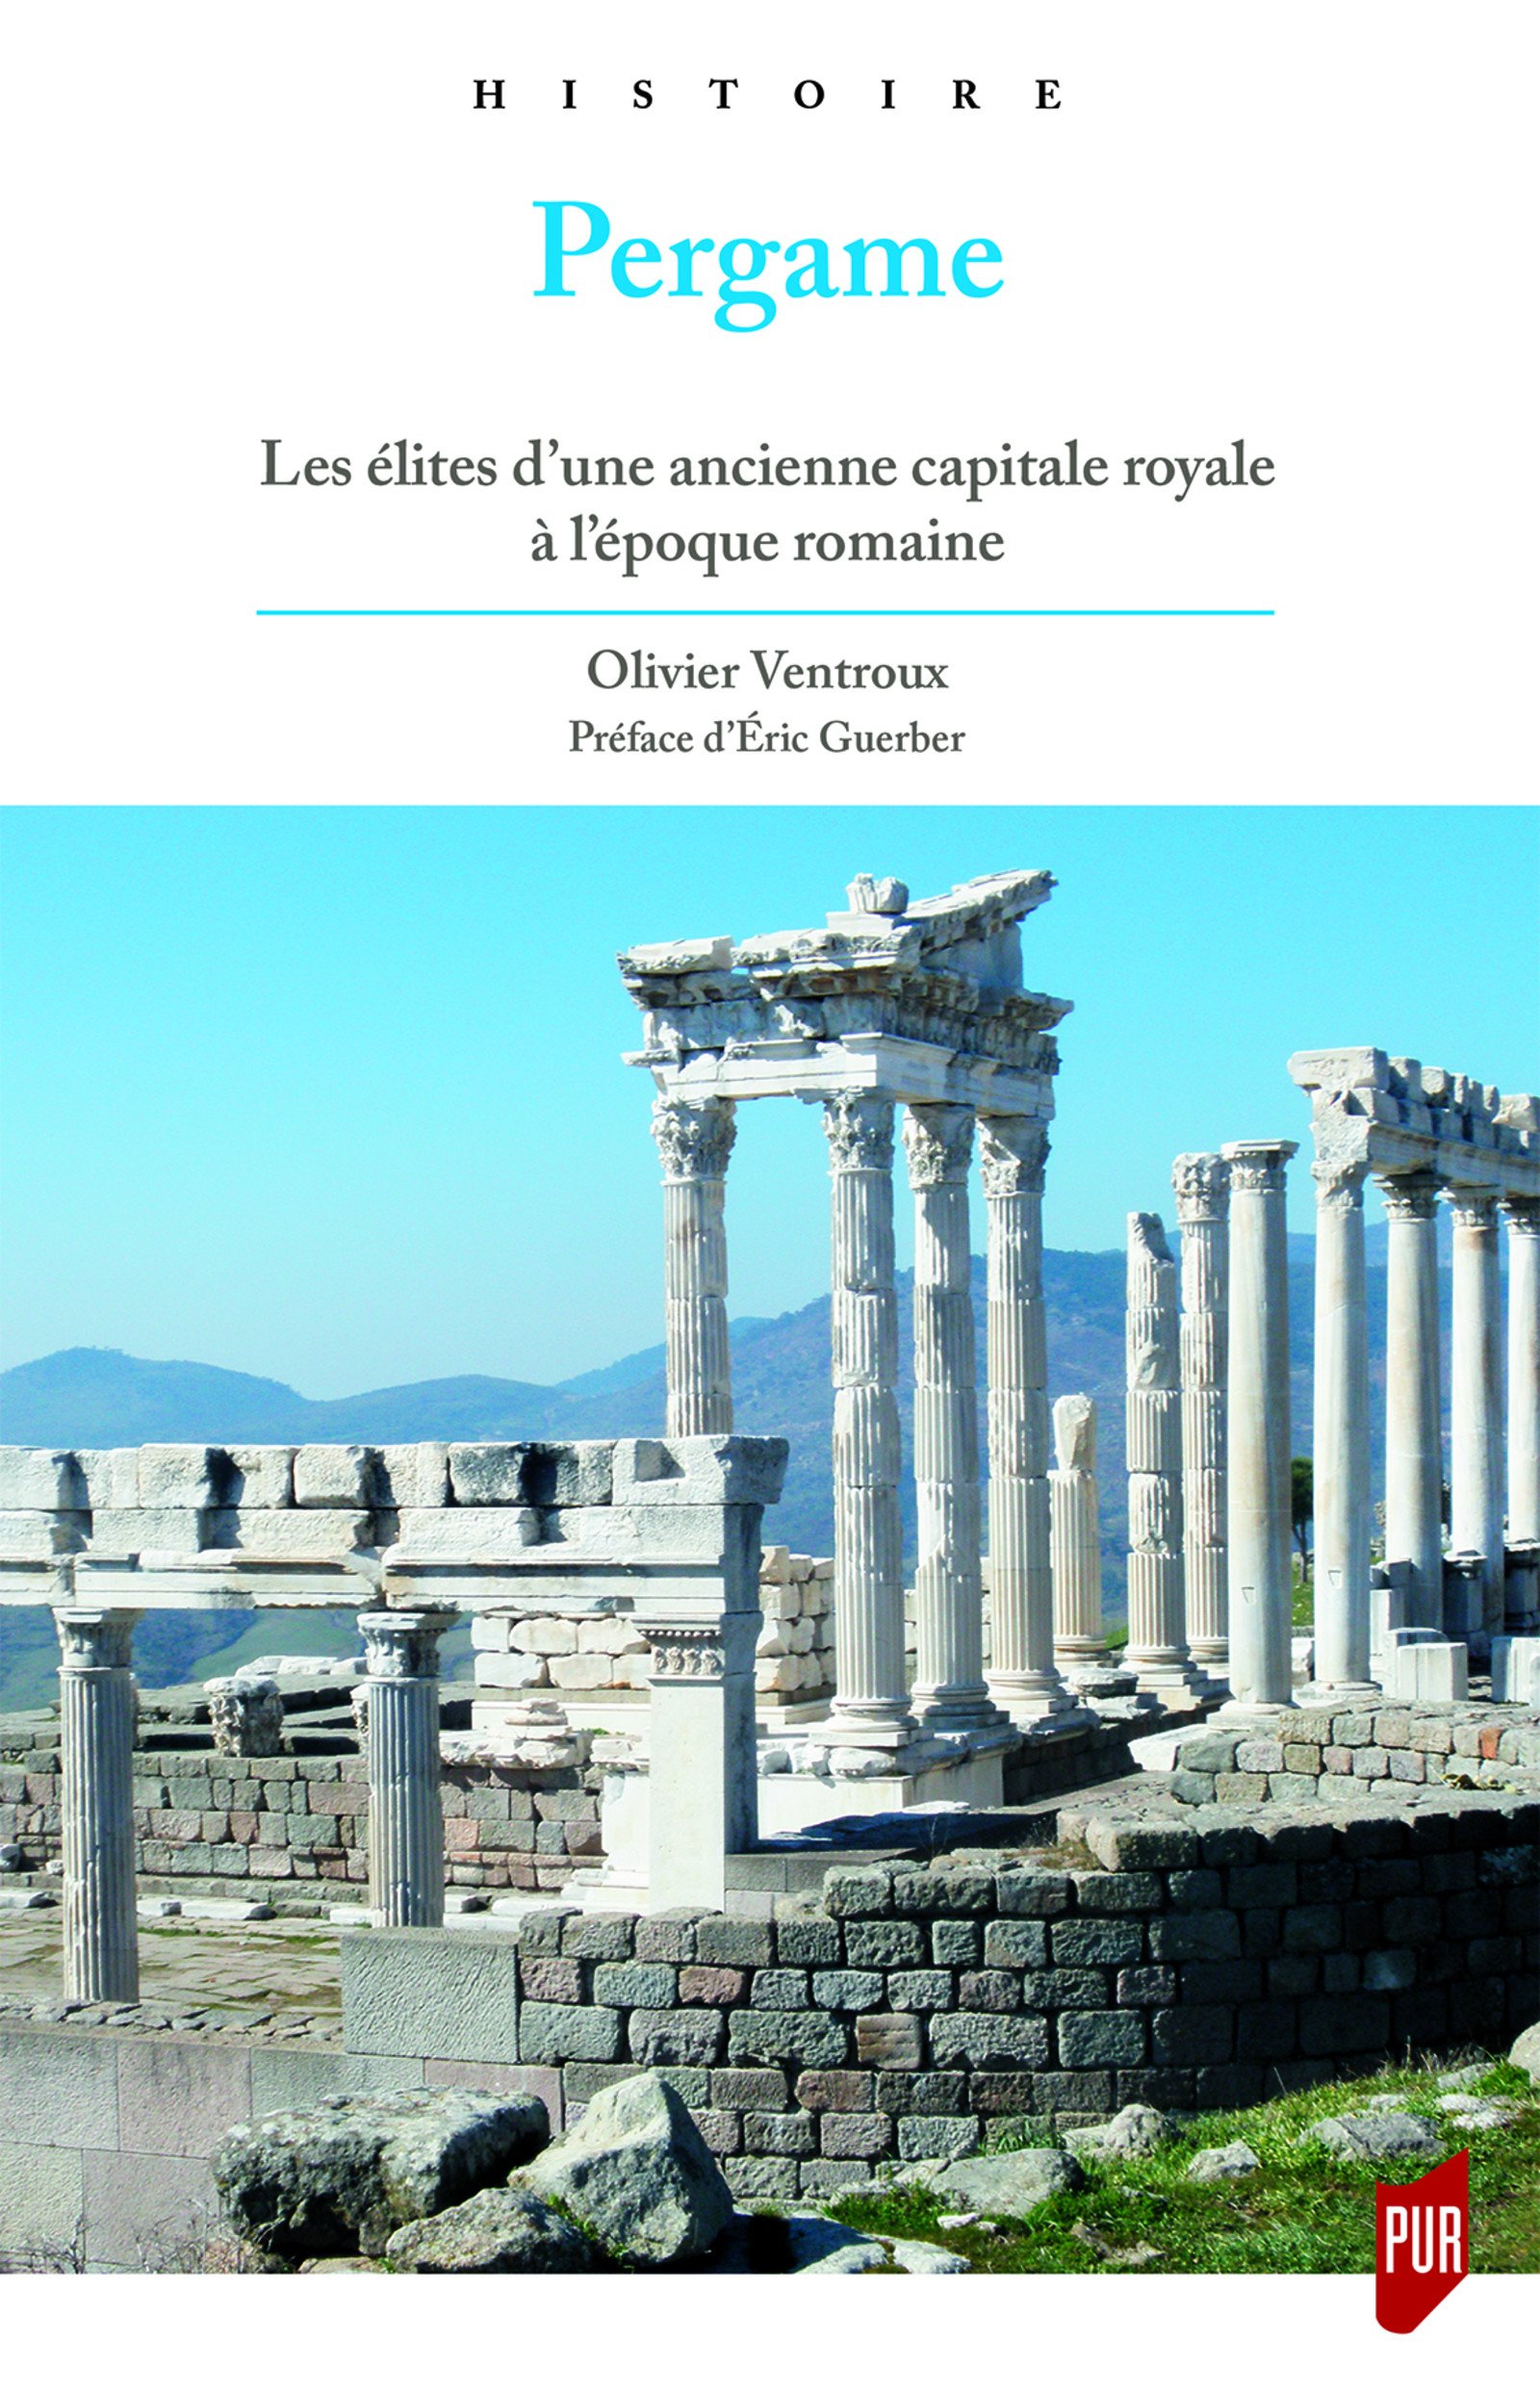 Pergame. Les élites d'une ancienne capitale royale à l'époque romaine, 2017, 200 p.